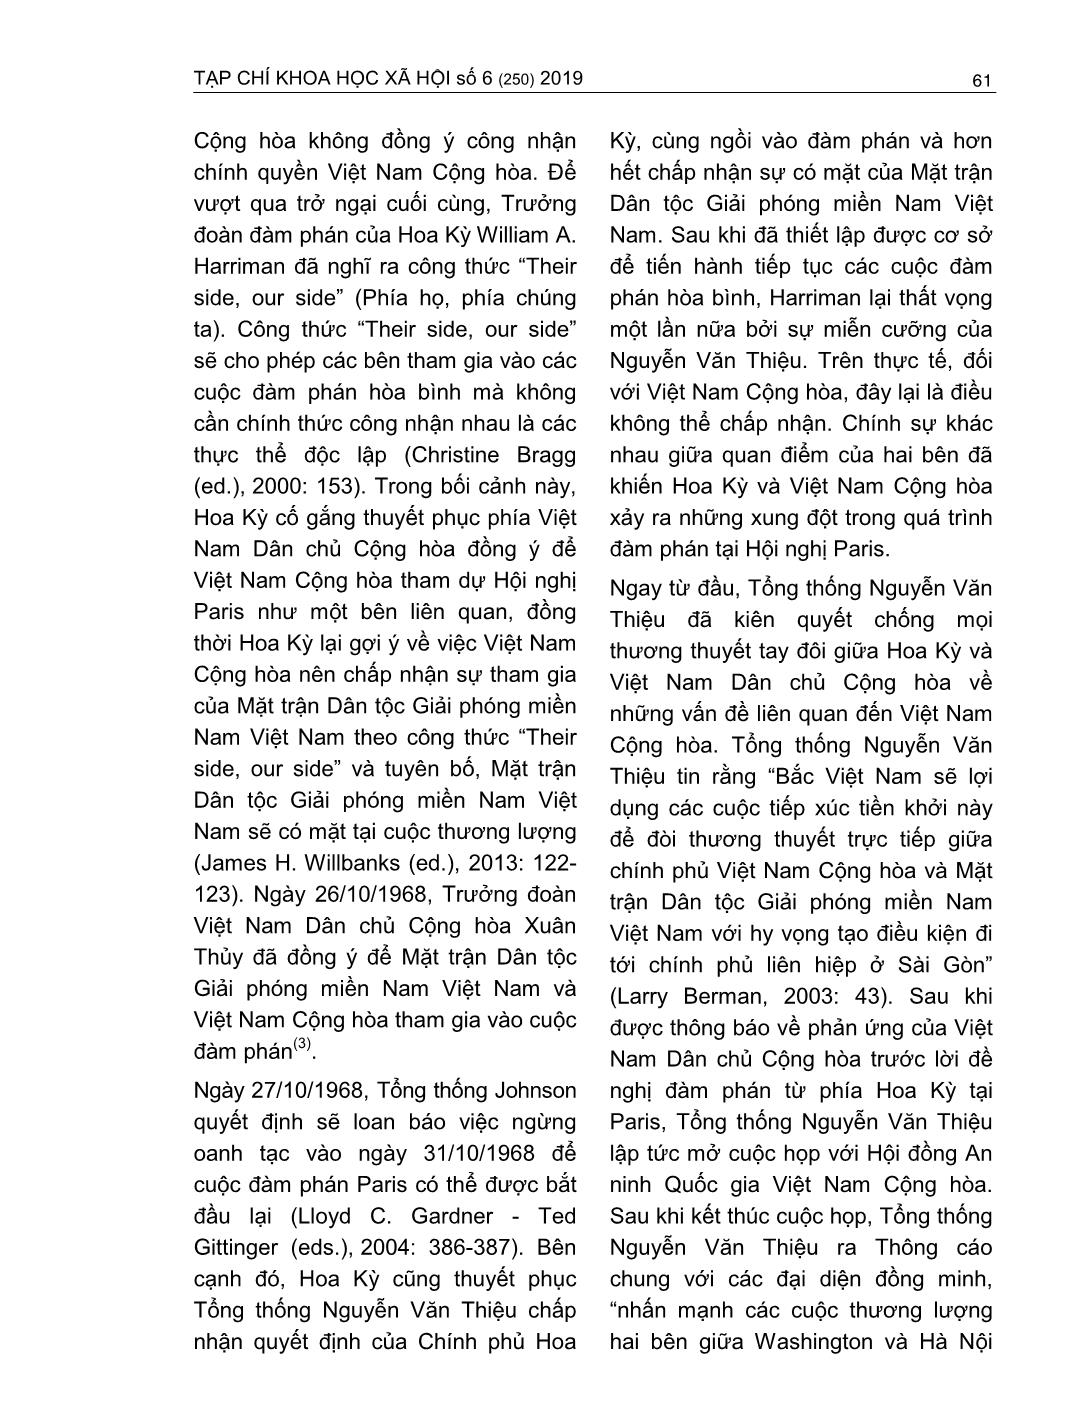 Quan hệ Việt Nam cộng hòa - Hoa Kỳ trong hội nghị Paris (1968 - 1973) trang 5